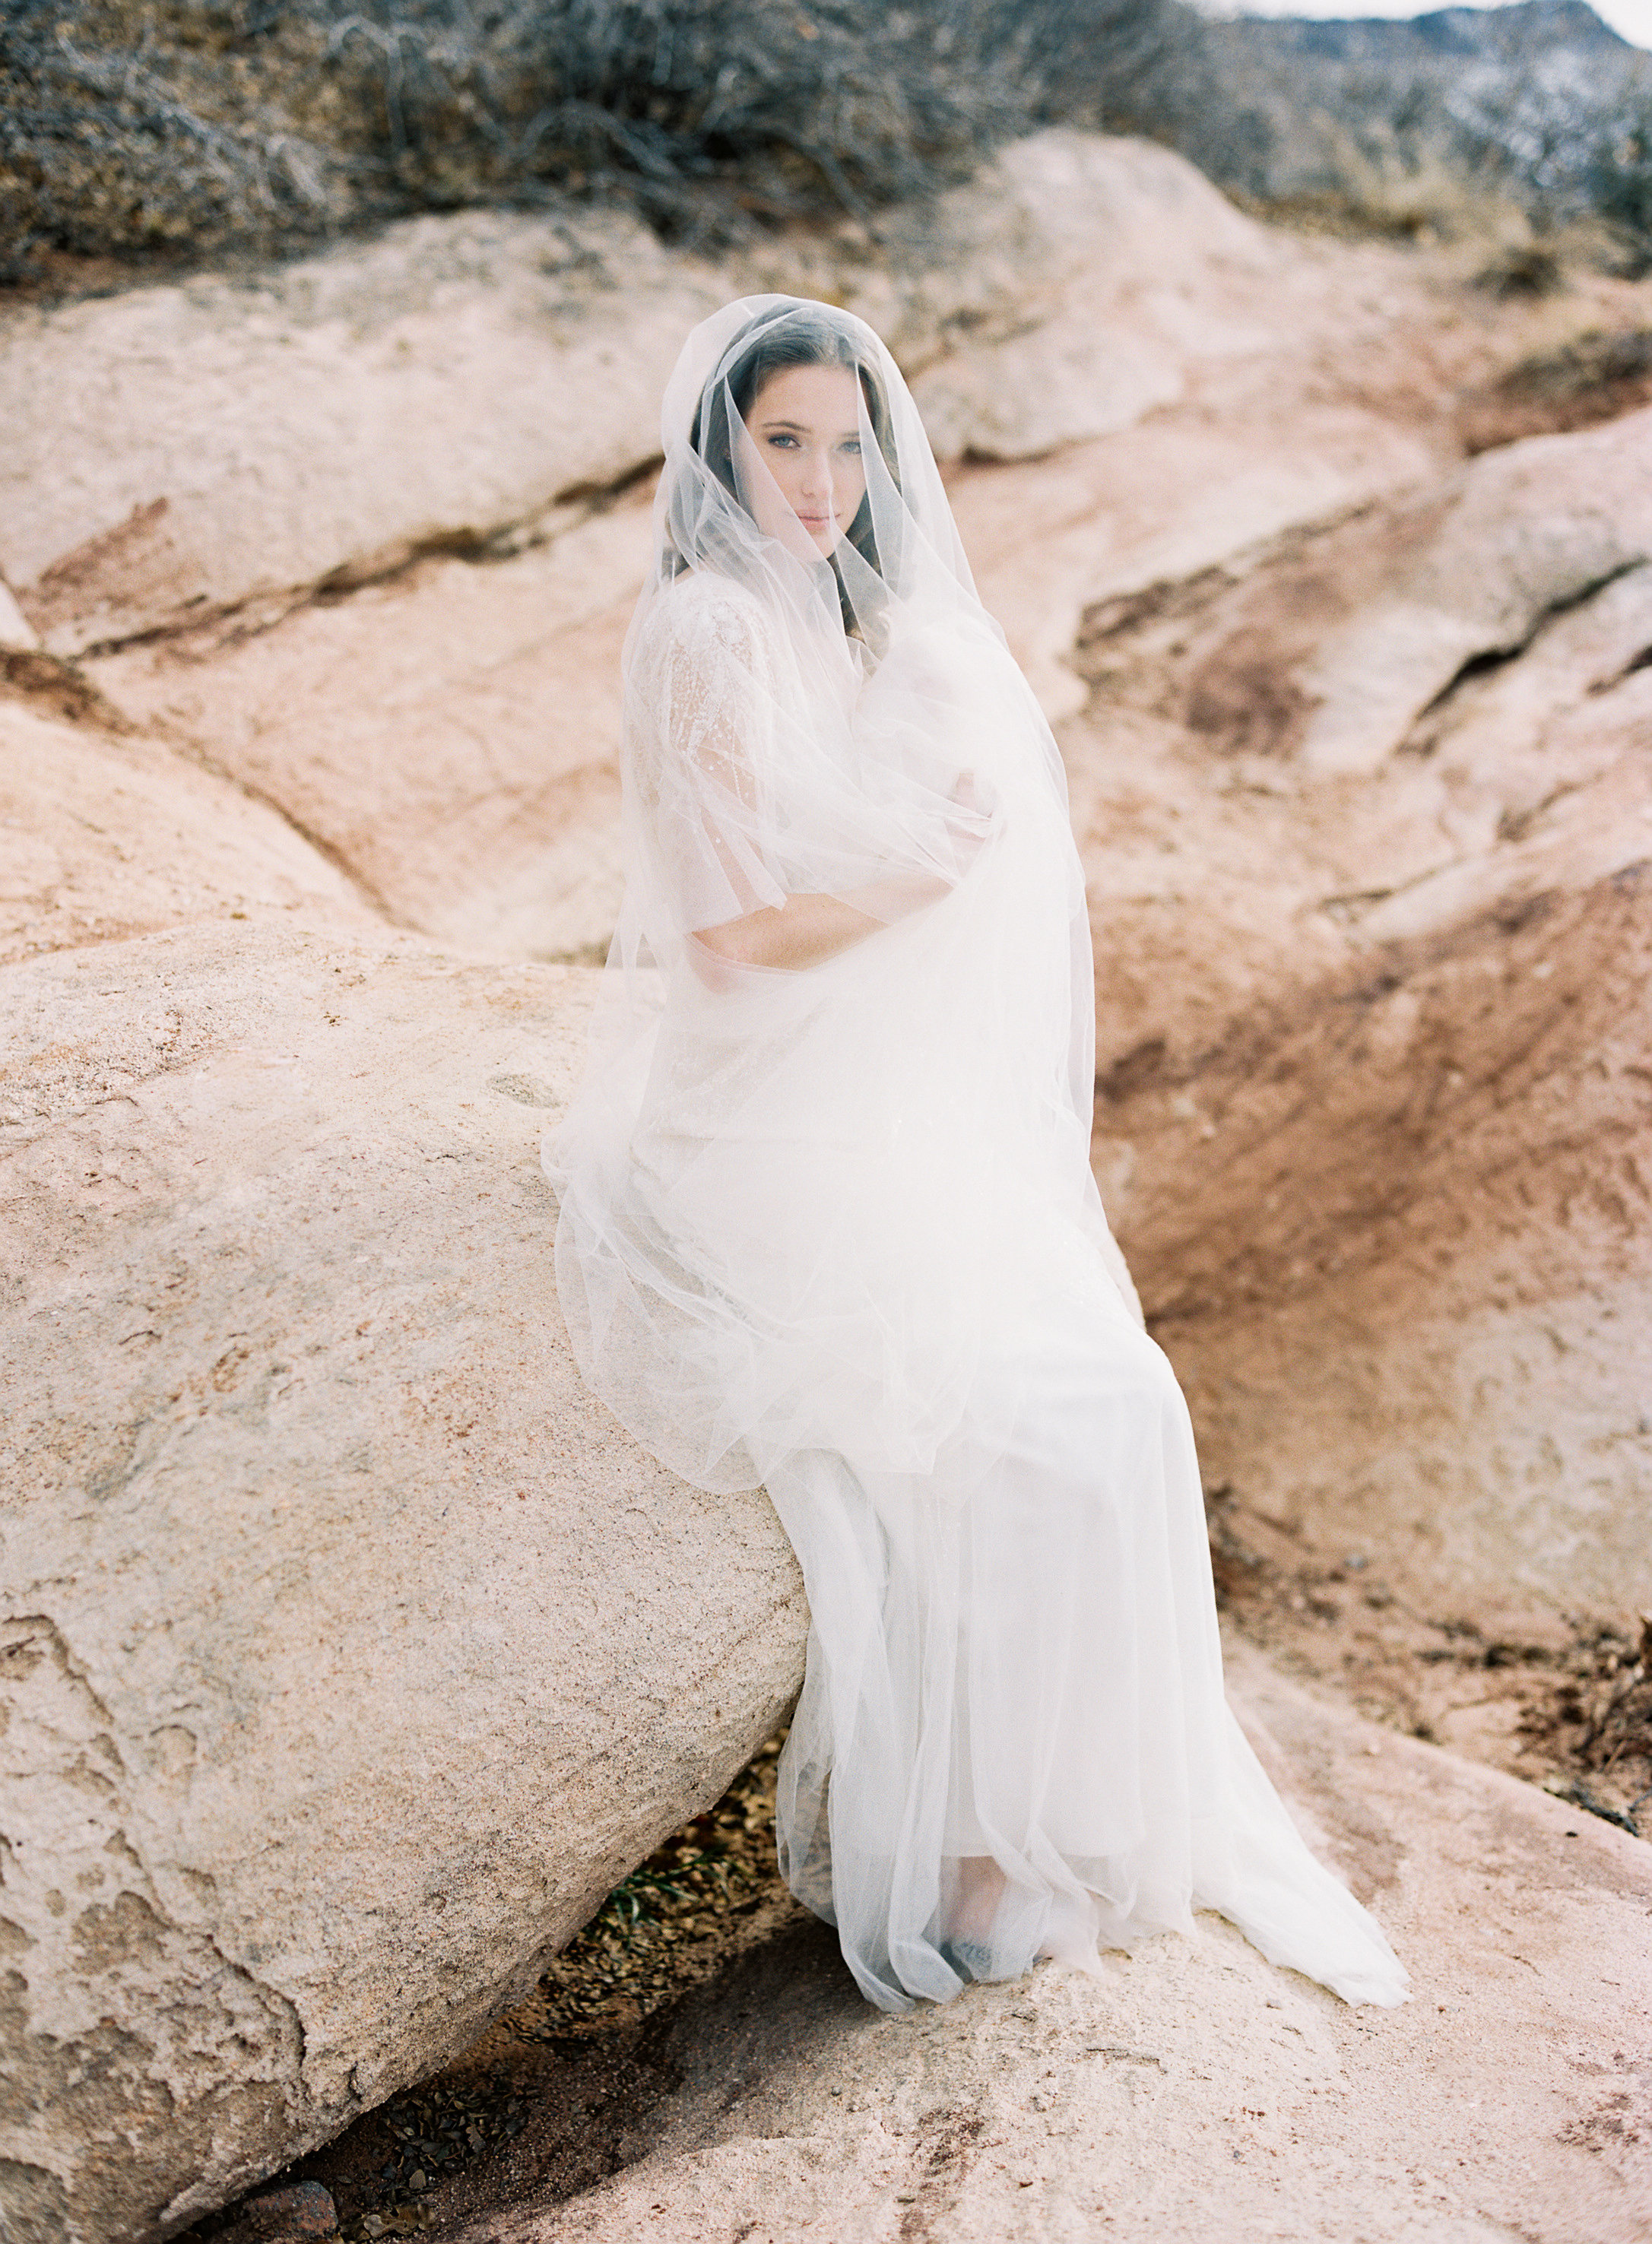 Full length veil on a bride.